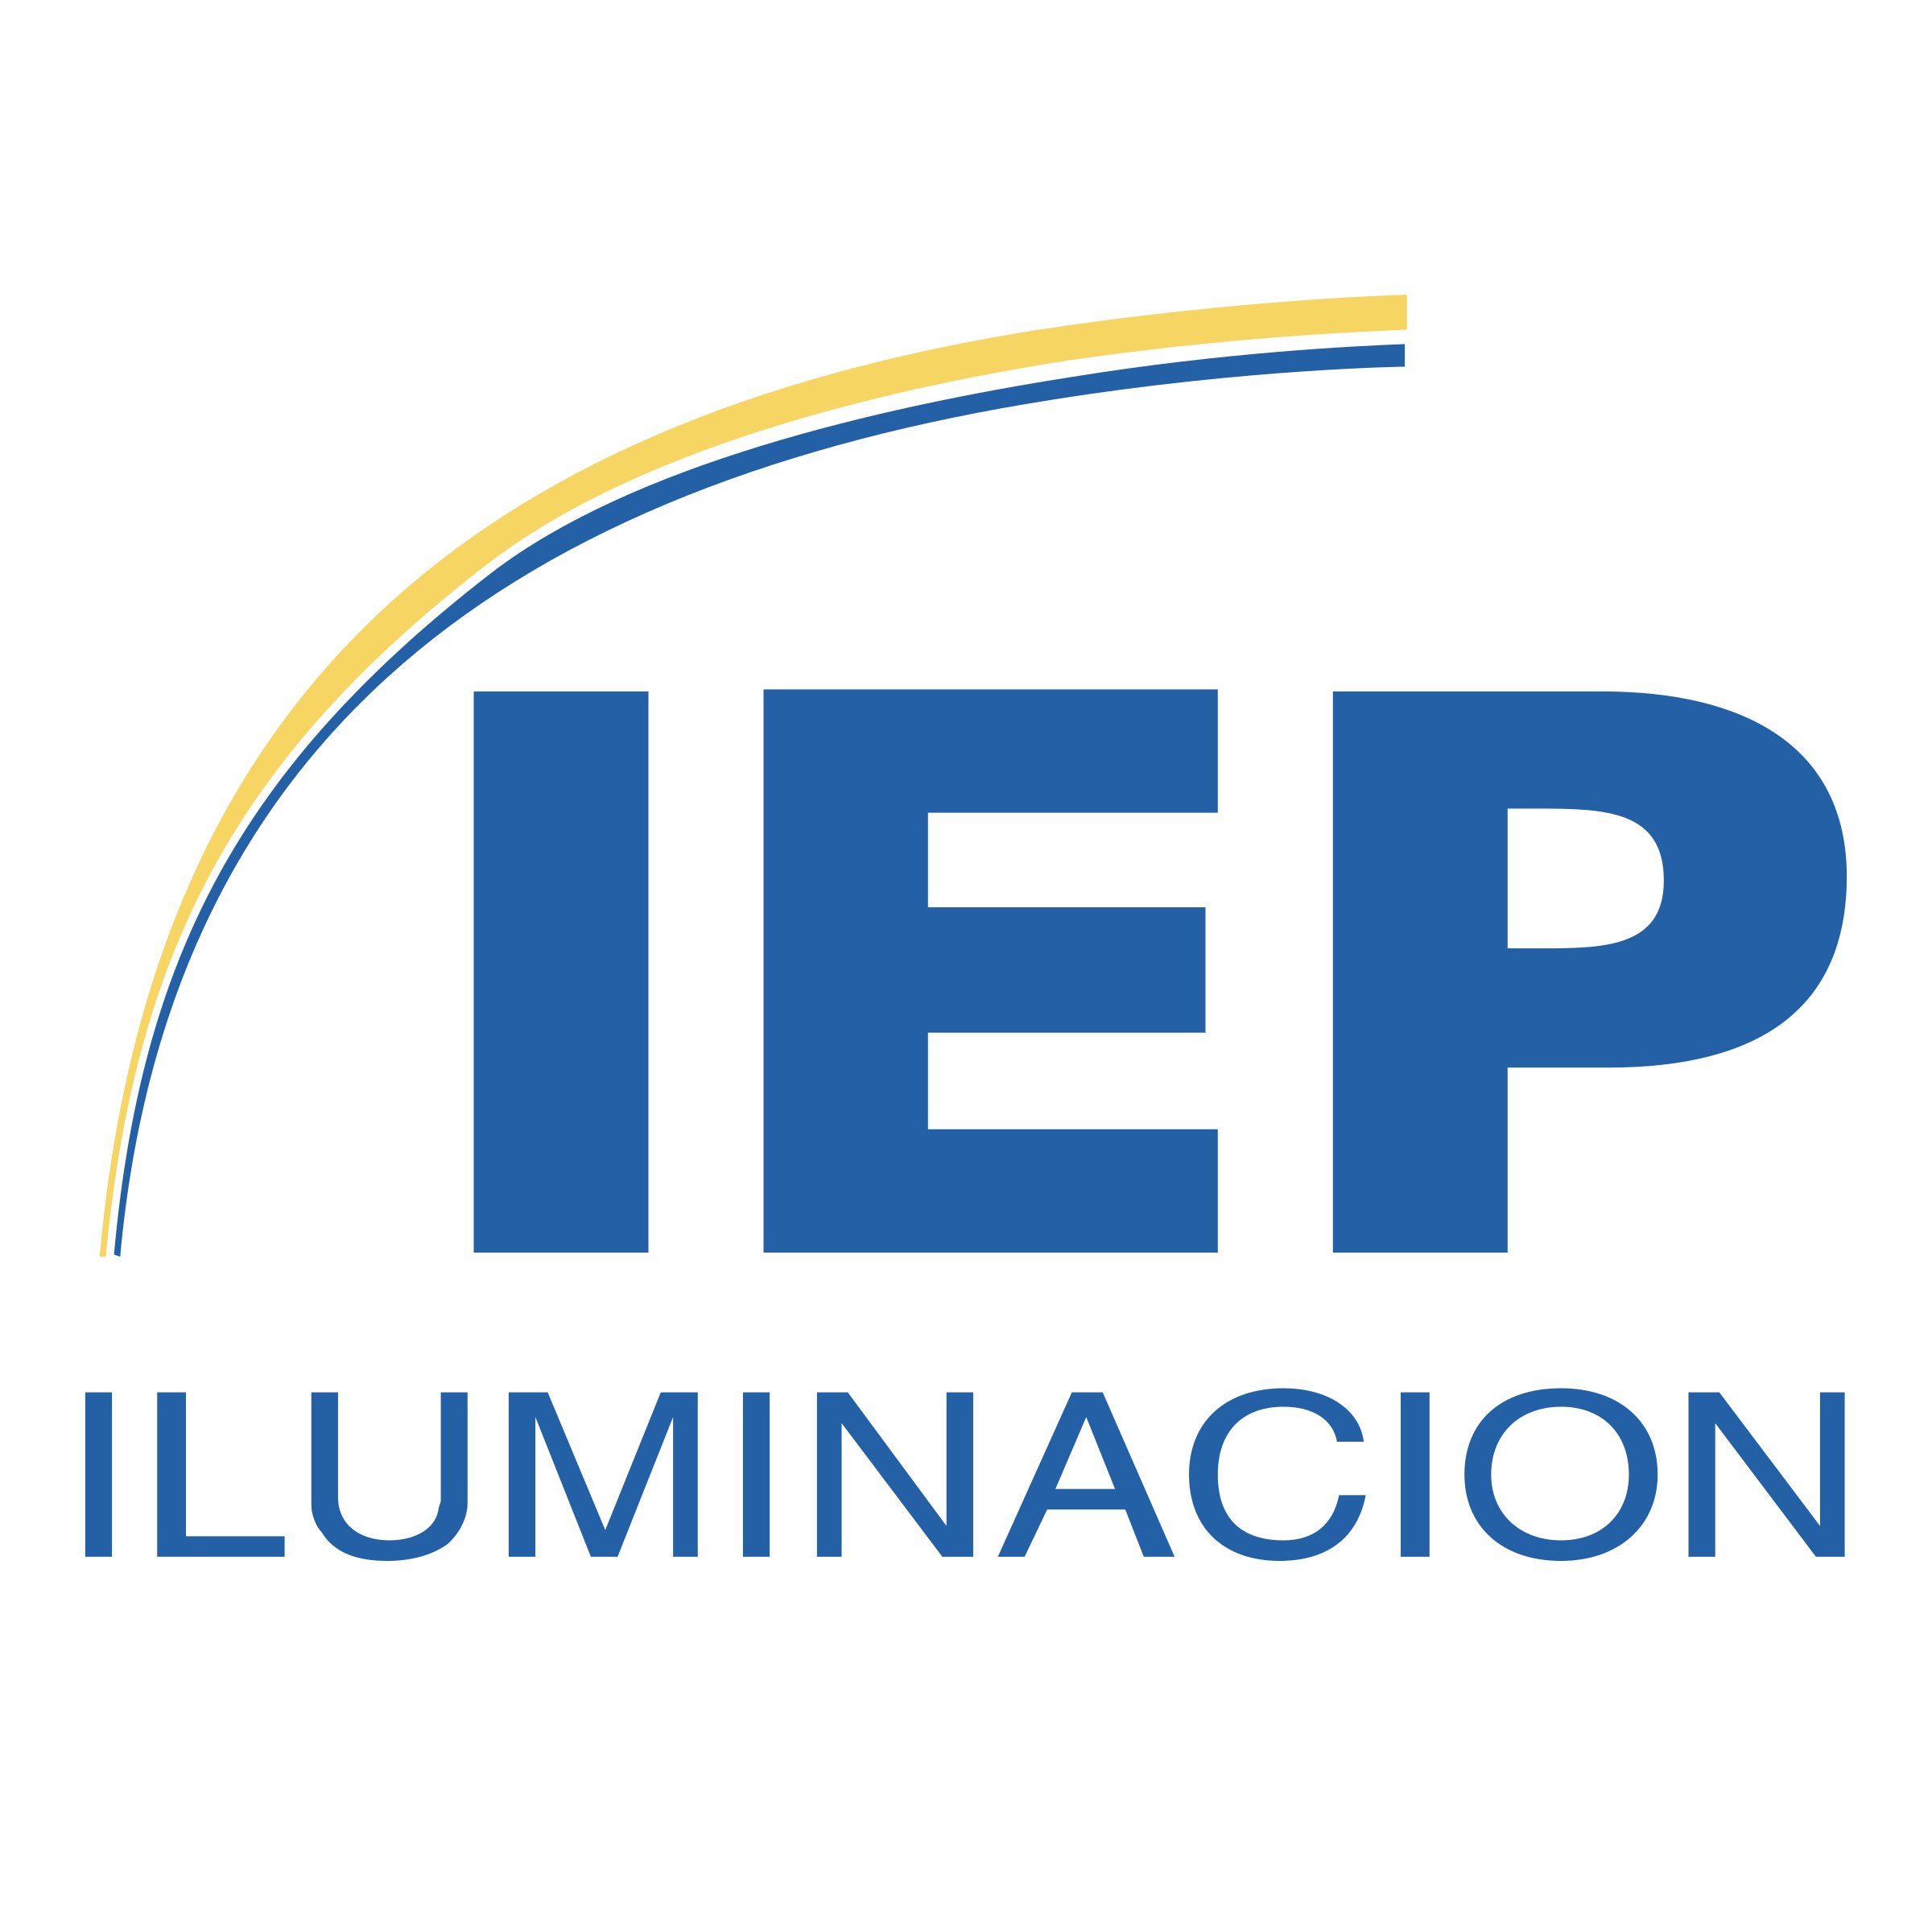 IEP Logo - IEP Iluminacion Logo PNG Transparent & SVG Vector - Freebie Supply